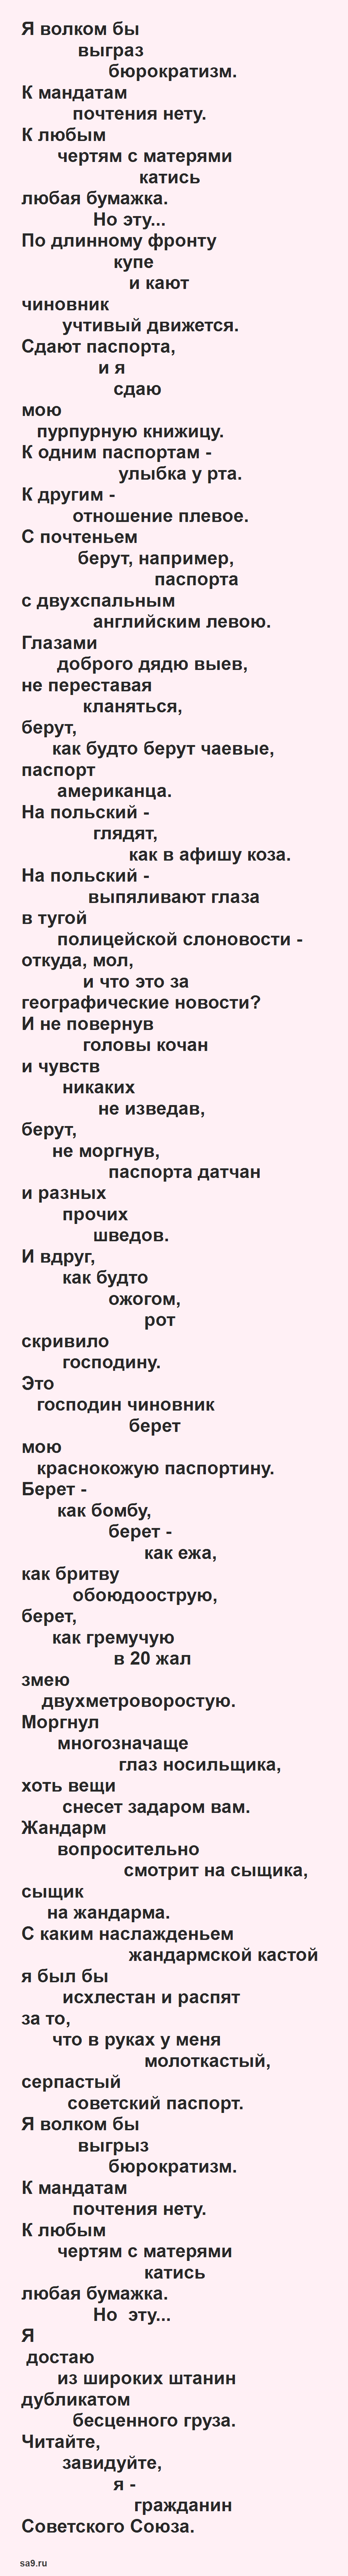 Стихотворение Маяковского о Советском паспорте текст